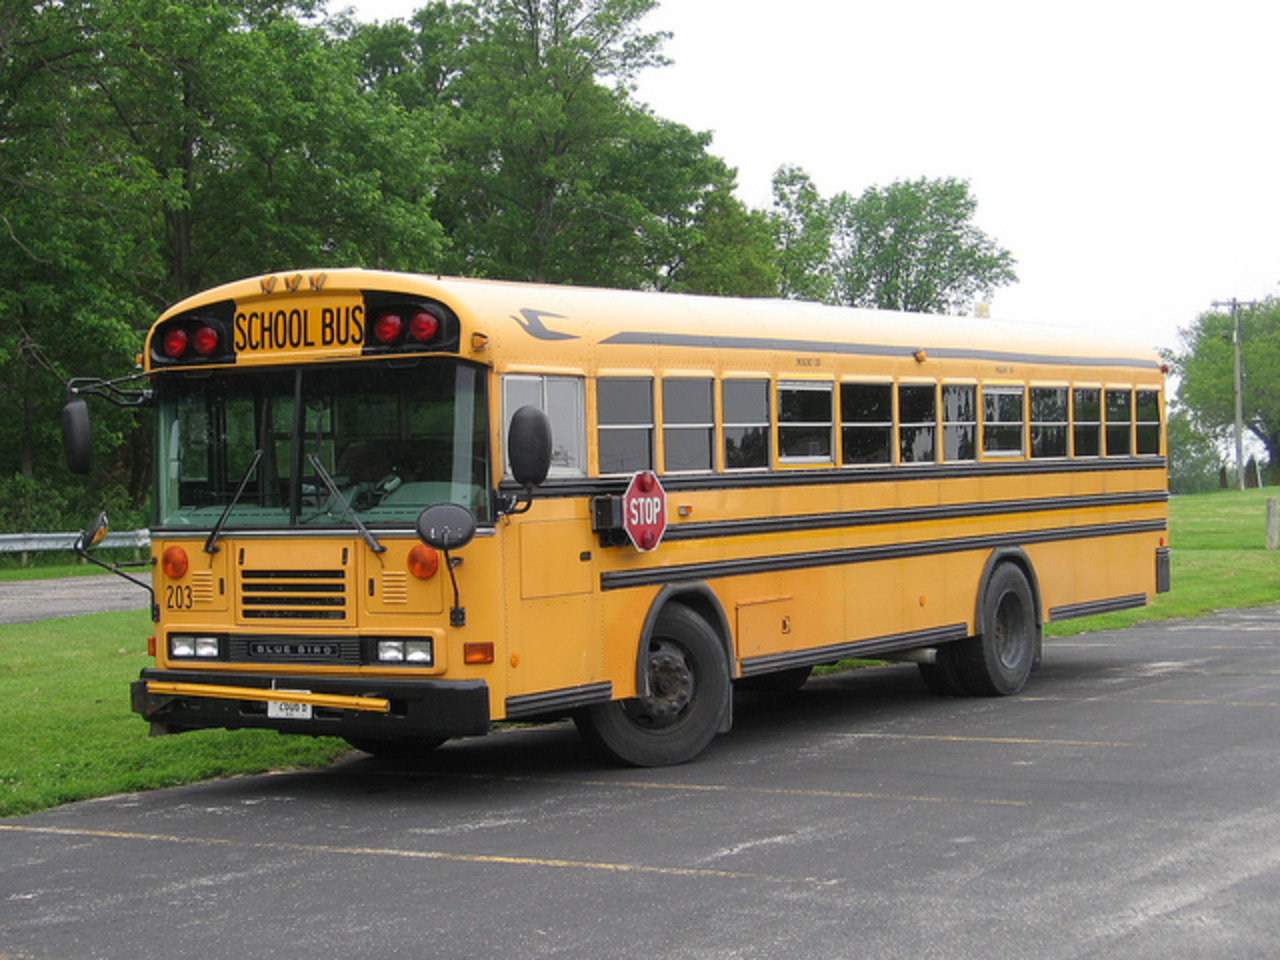 2006 Blue Bird All American school bus | Flickr - Photo Sharing!